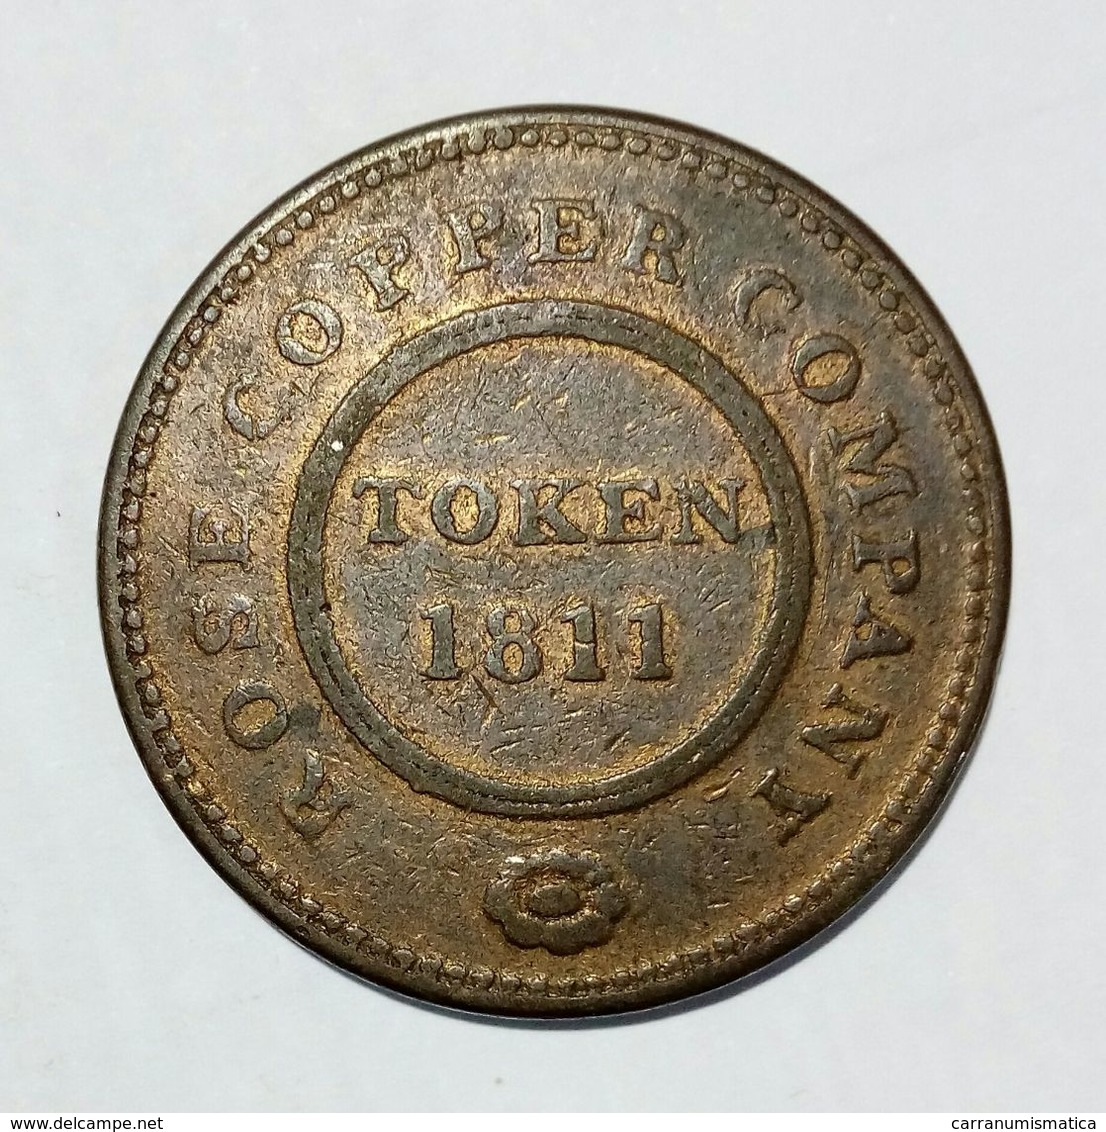 BIRMINGHAM & SWANSEA - ROSE COPPER COMPANY - HALF Penny Token ( 1811 ) / Copper - Monetari/ Di Necessità